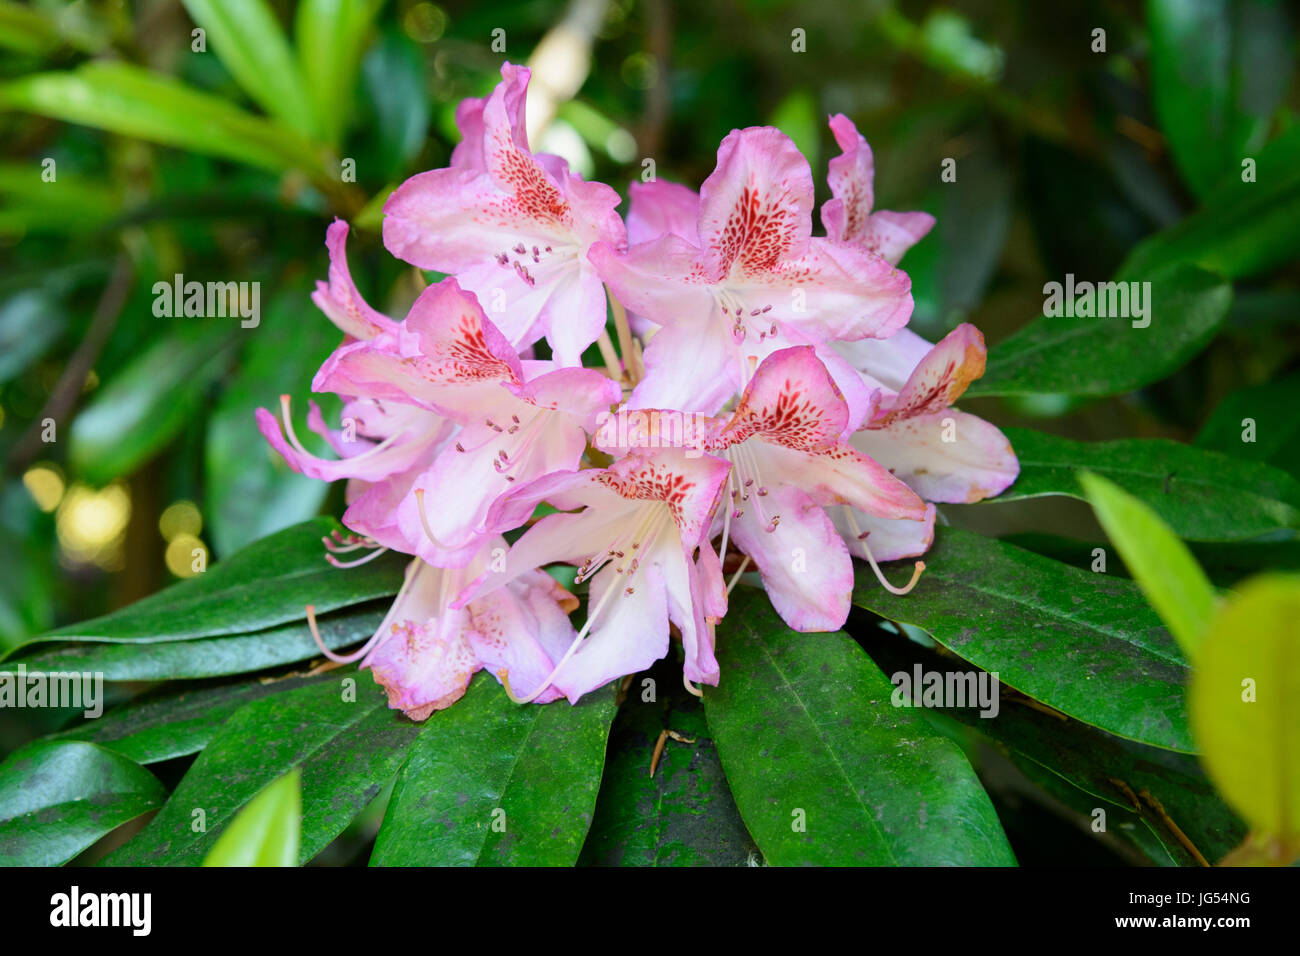 Gros plan d'une fleur Rhododendron rose Banque D'Images